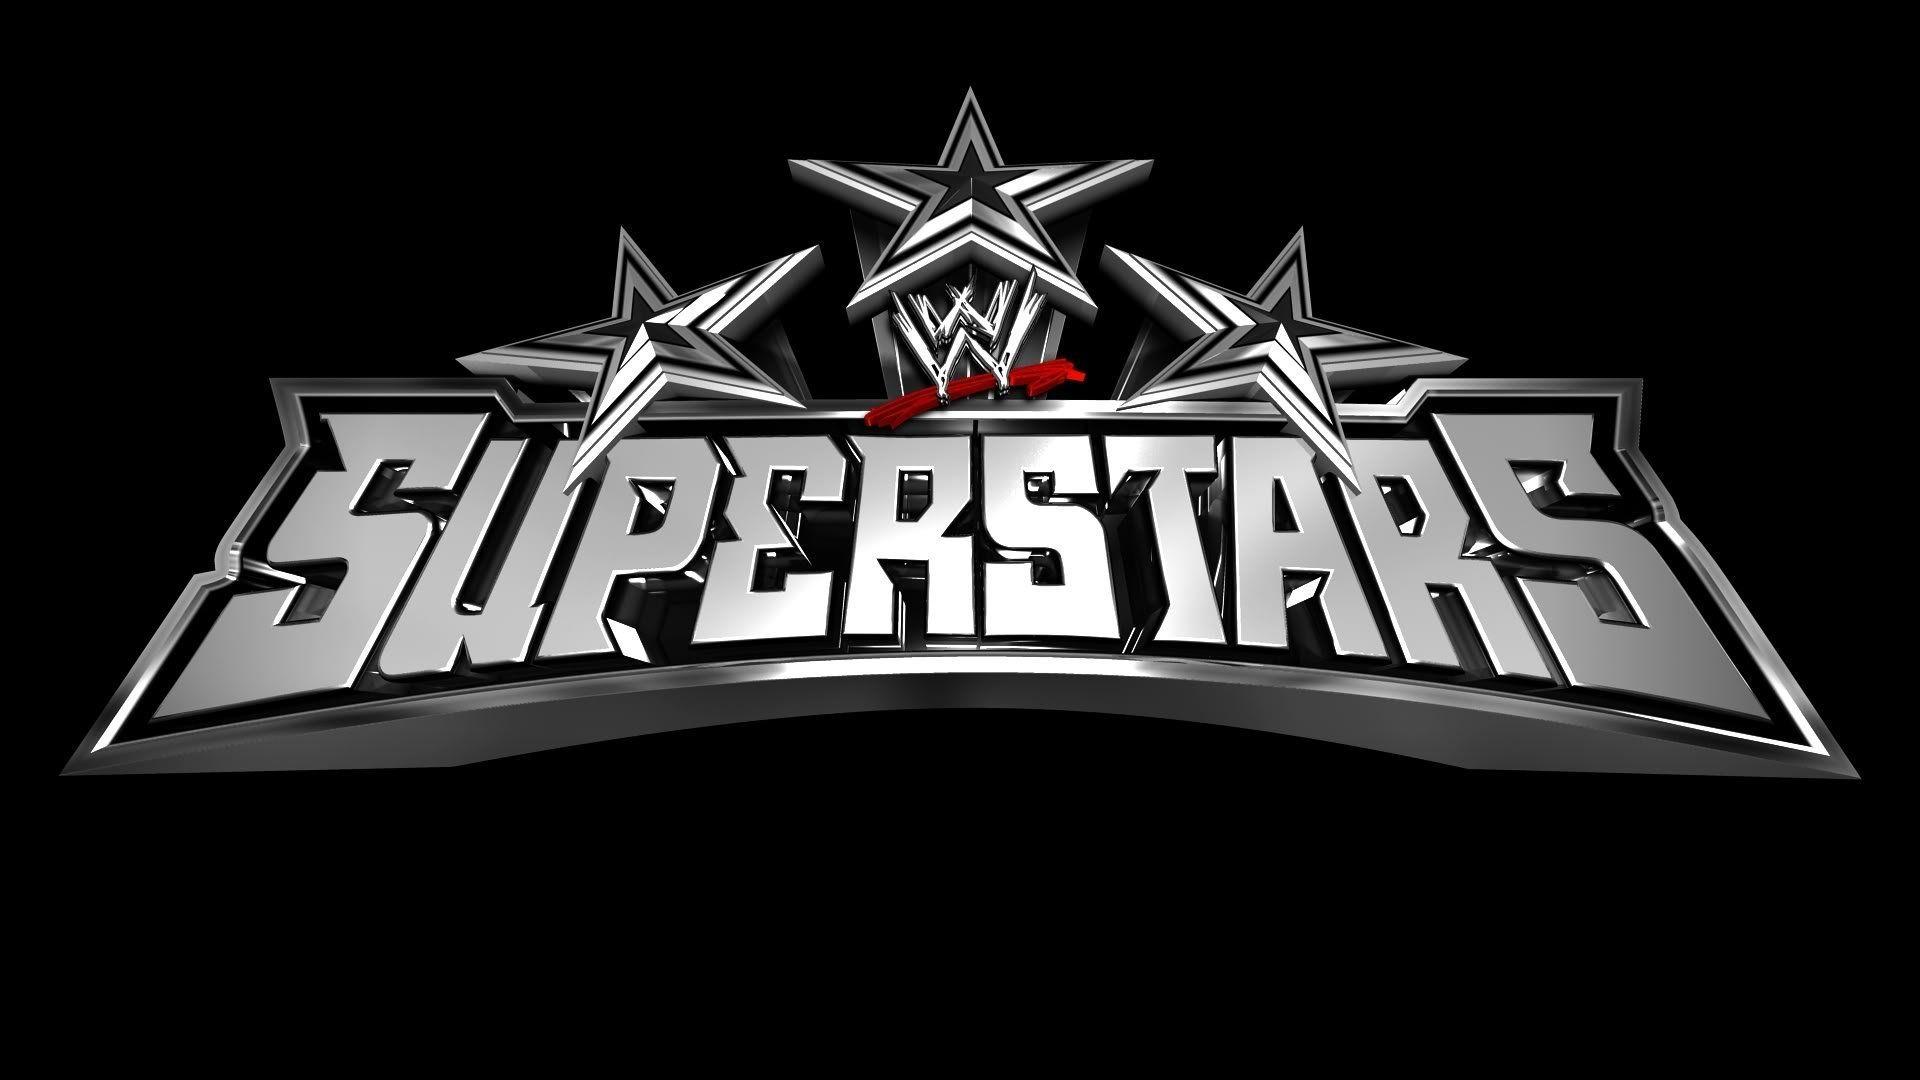 WWE Superstars Logo - WWE Superstars Logo Wallpapers - Wallpaper Cave